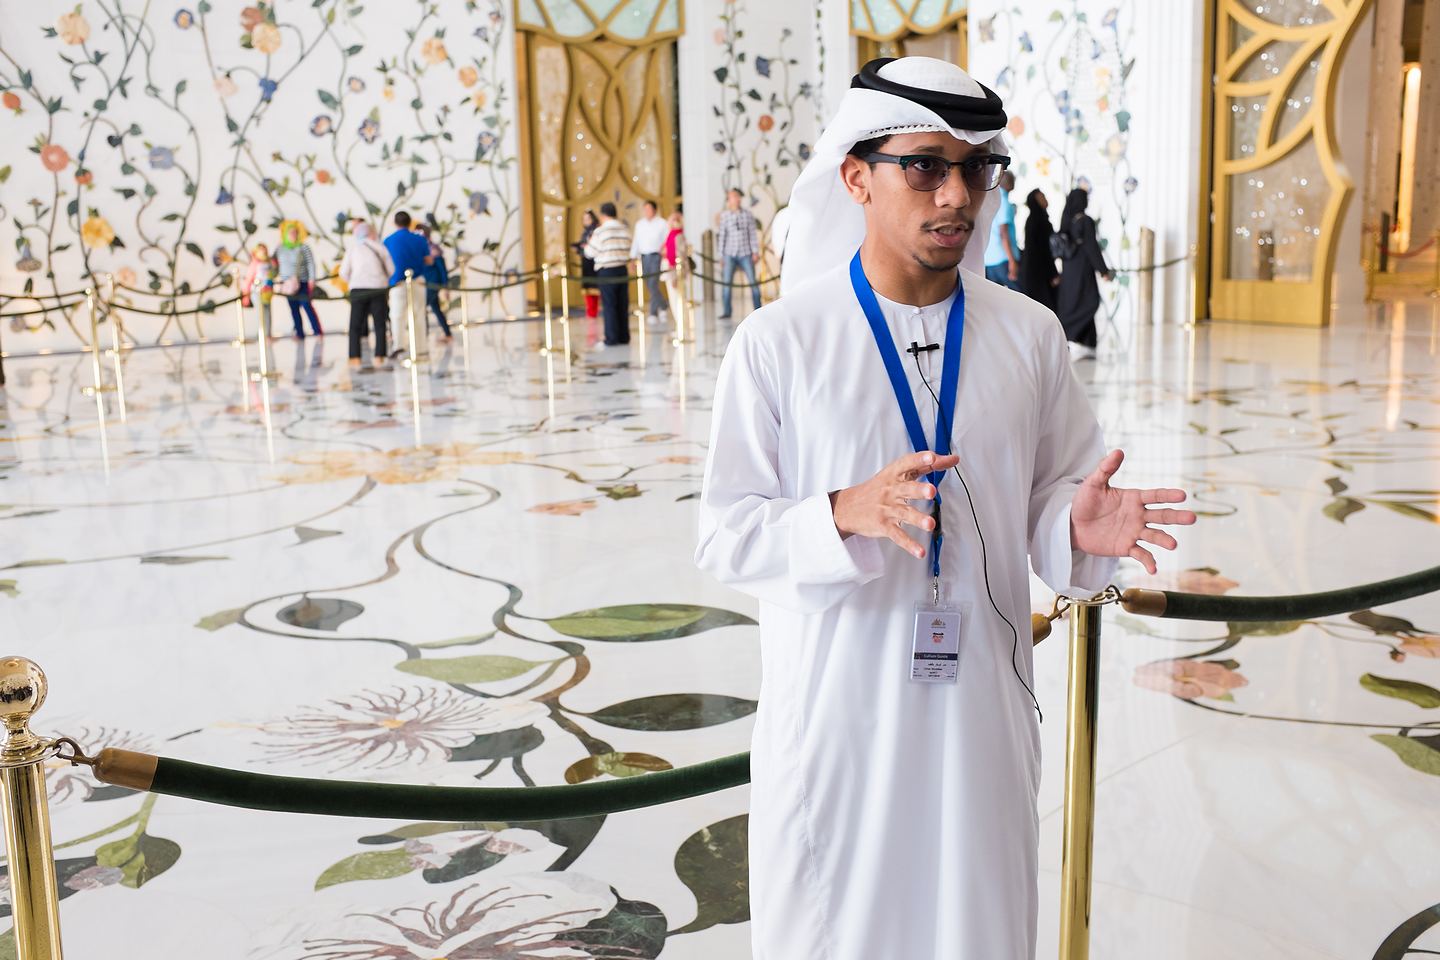 Przewodnik w Sheikh Zayed Grand Mosque, Abu Dhabi (Emiraty Arabskie)